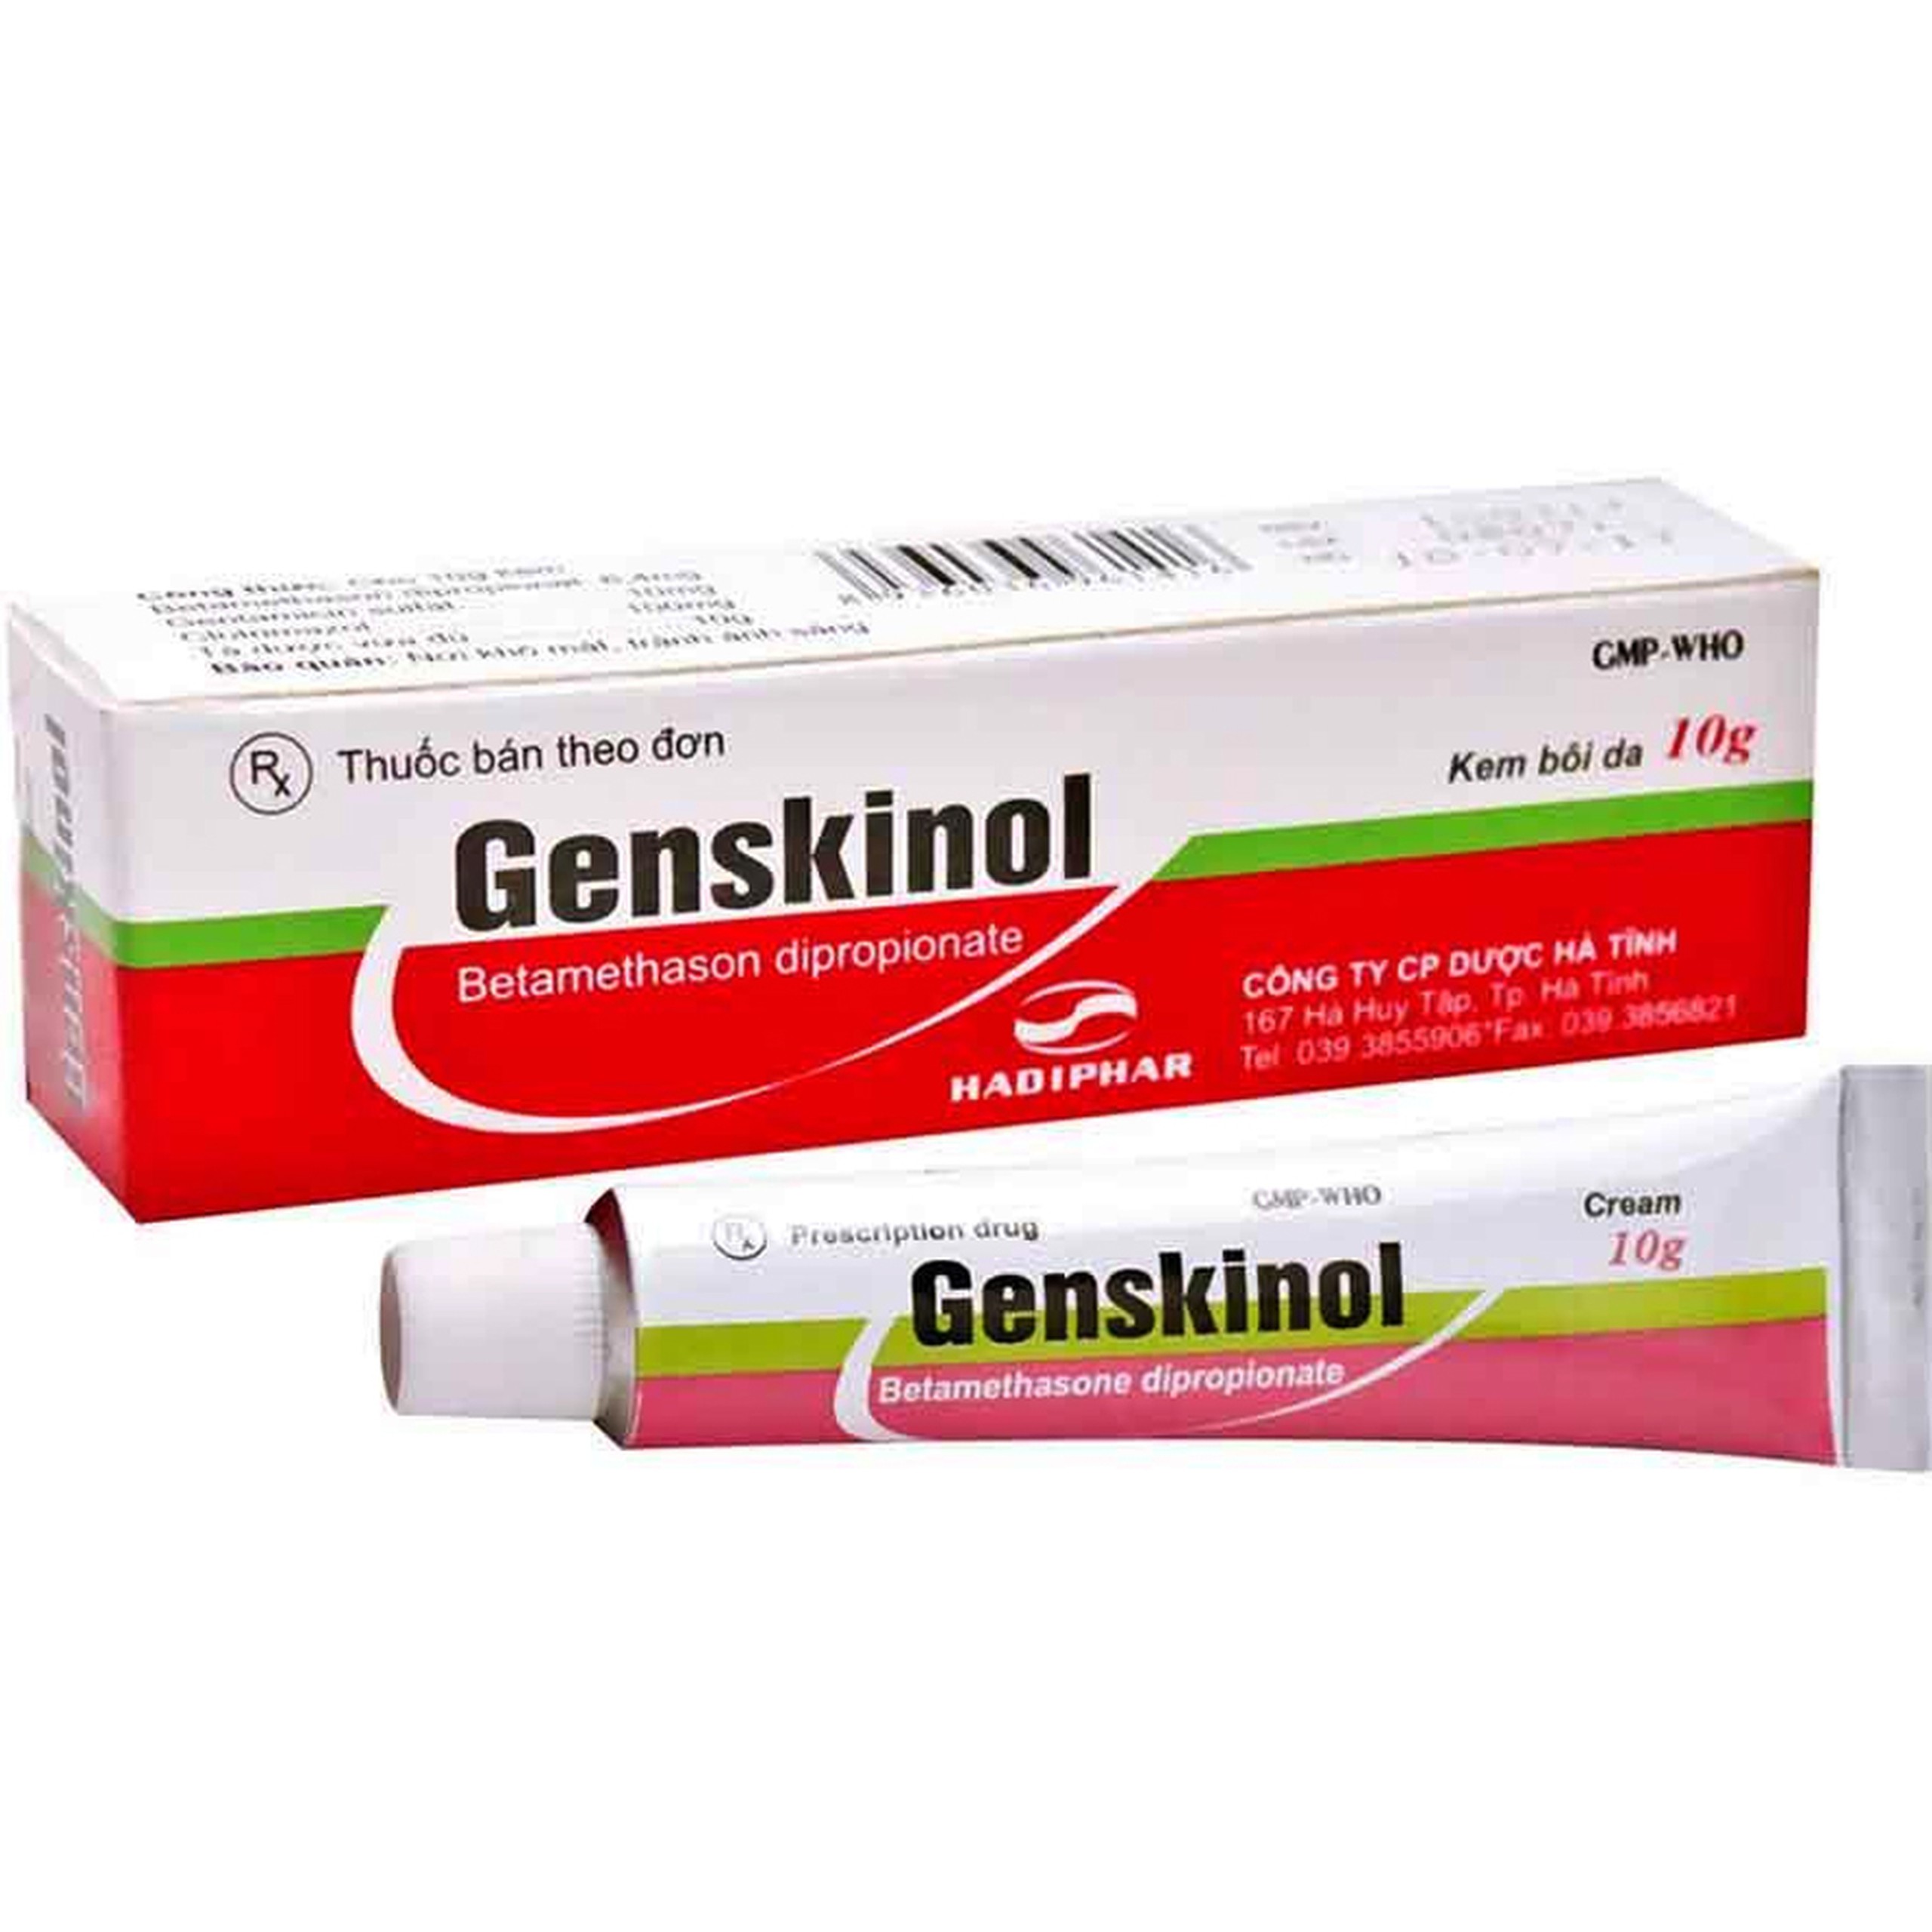 Kem bôi da Genskinol Hadiphar điều trị viêm da do tiếp xúc, hăm da, bệnh vẩy nến, viêm da dị ứng, viêm da tróc vẩy (10g)